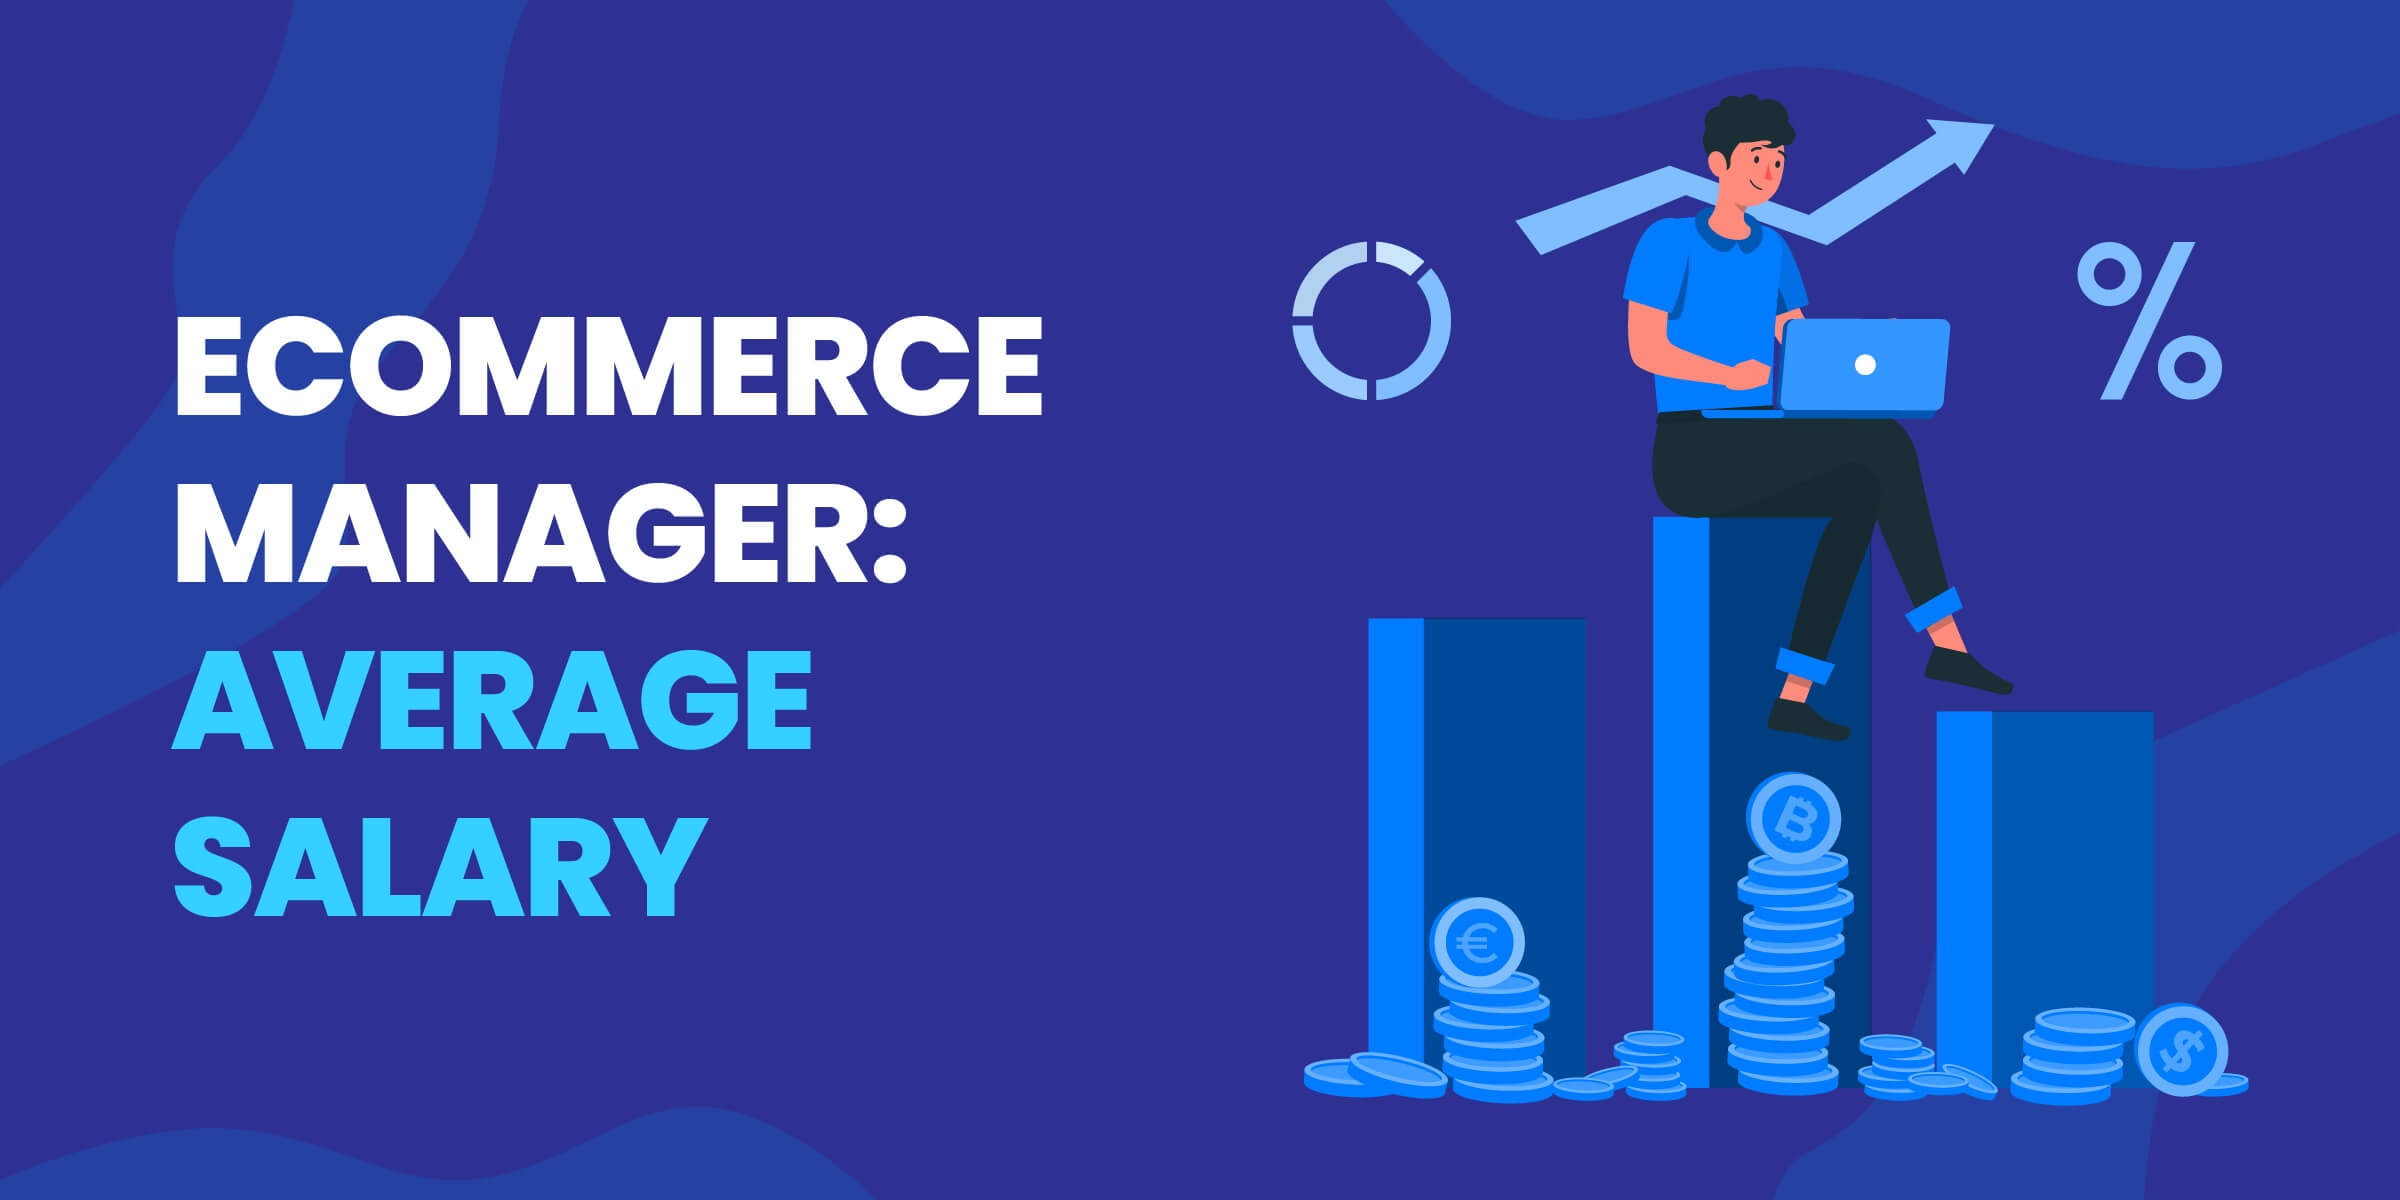 eCommerce Manager Average Salary